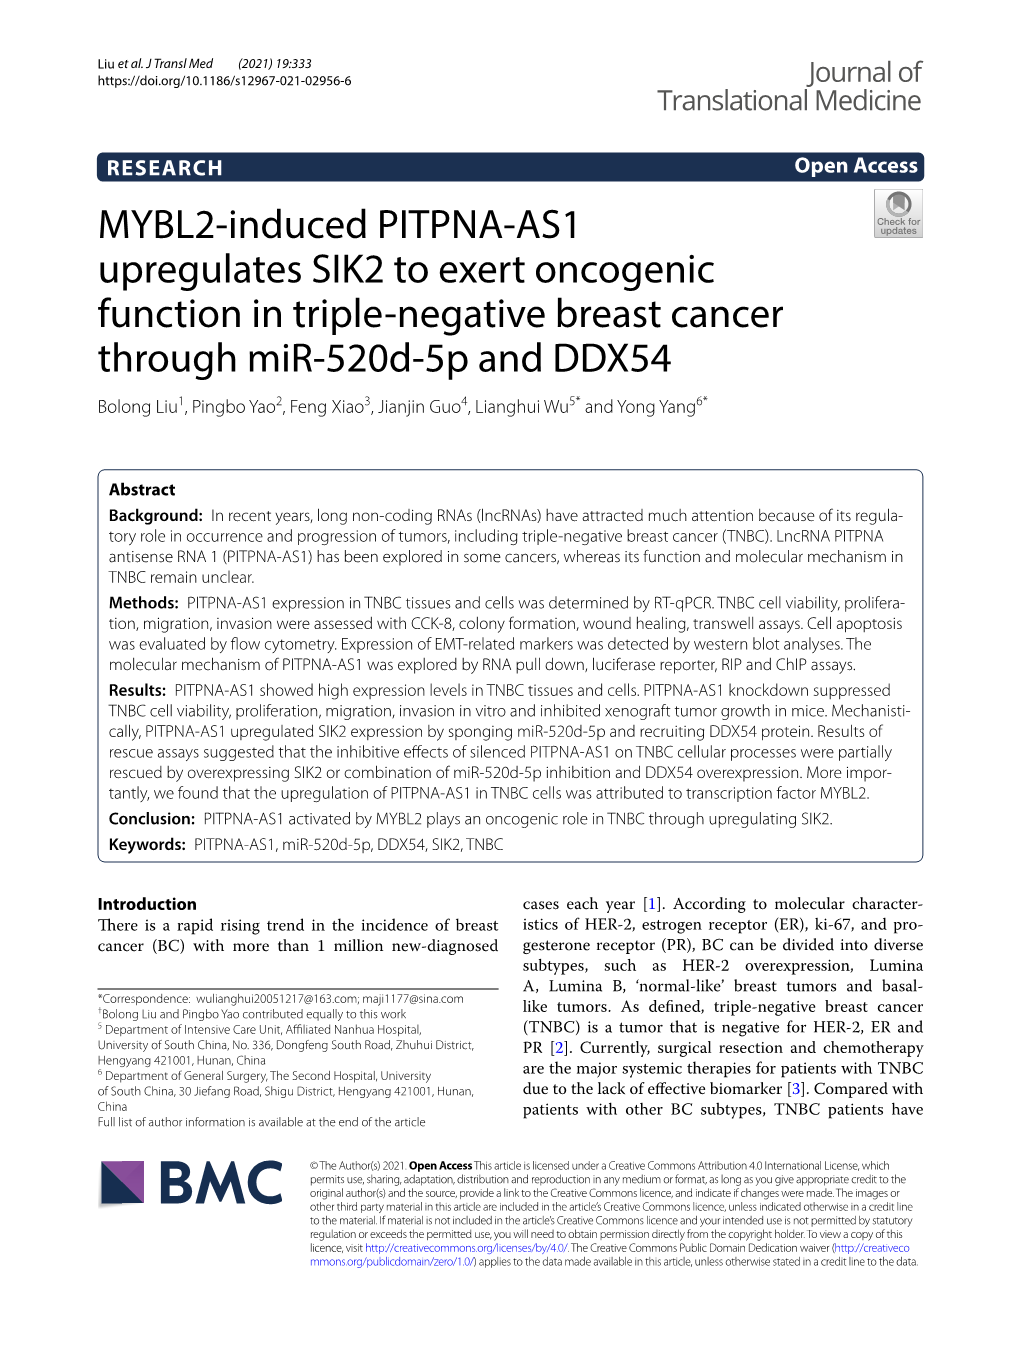 MYBL2-Induced PITPNA-AS1 Upregulates SIK2 to Exert